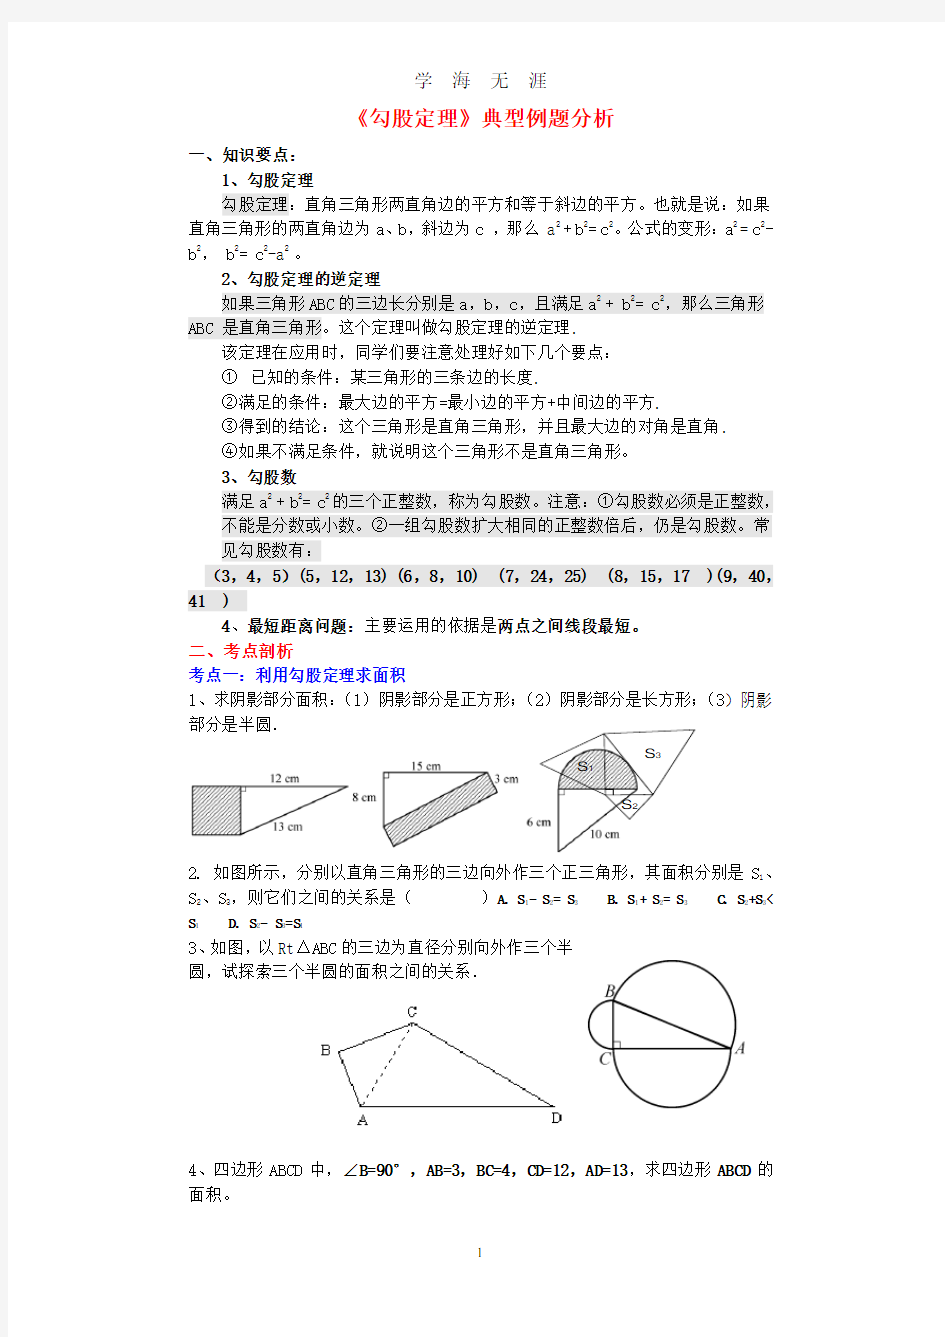 《勾股定理》典型例题.pdf